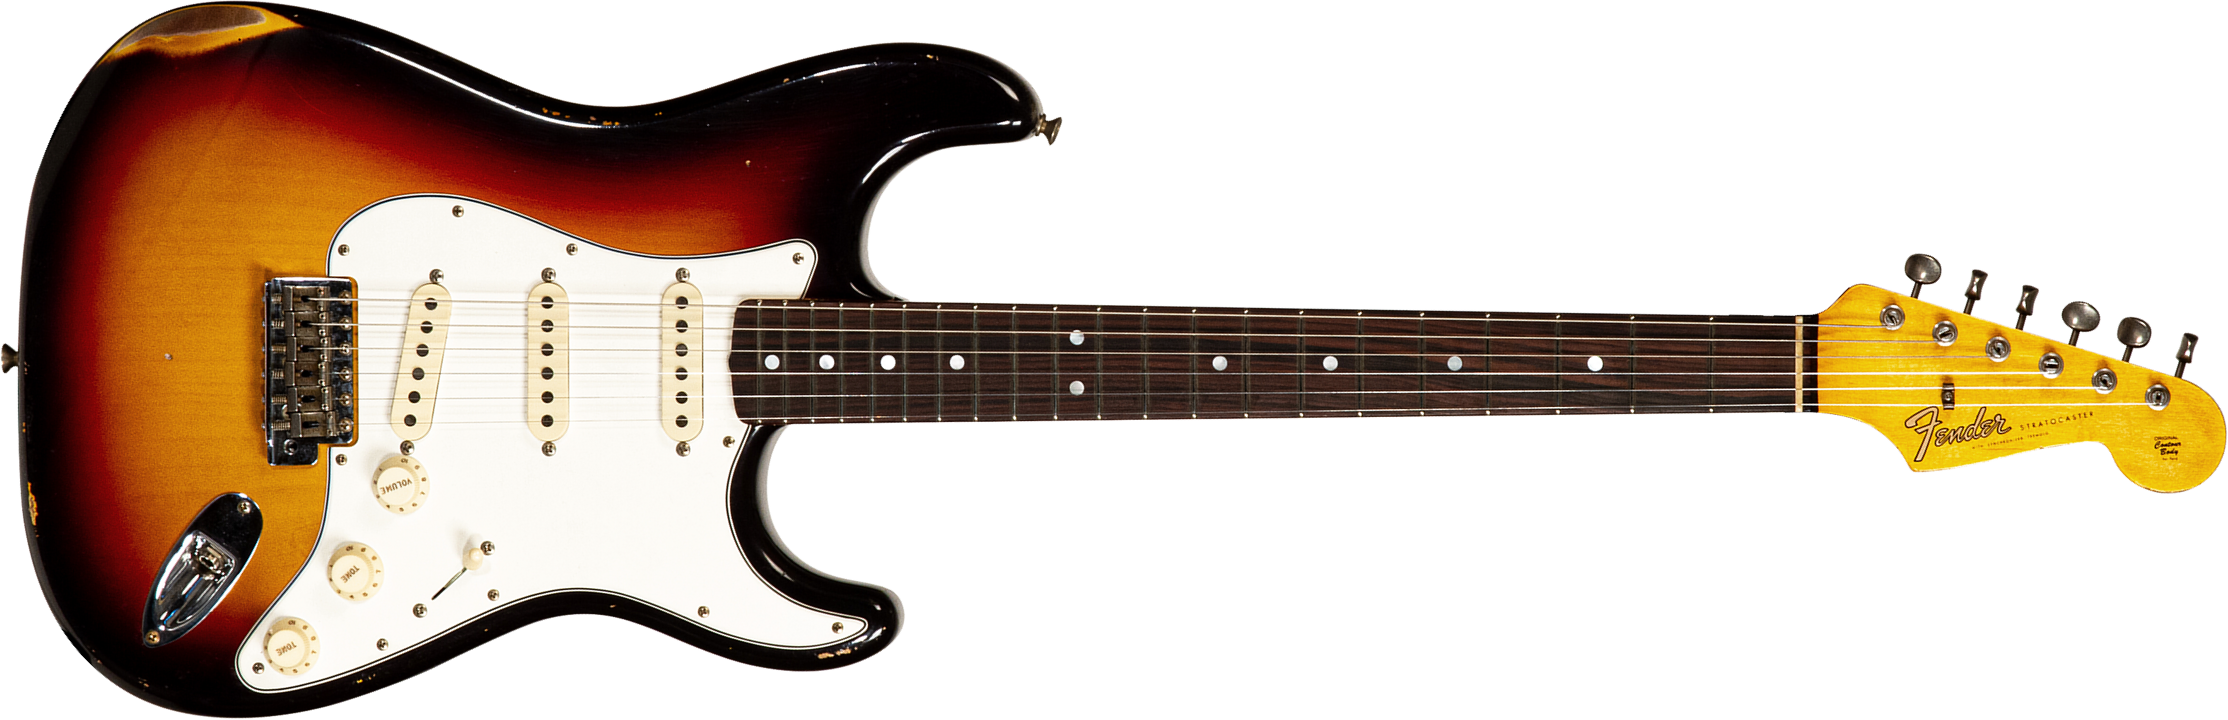 Fender Custom Shop Strat Late 64 3s Trem Rw #cz568169 - Relic Target 3-color Sunburst - Str shape electric guitar - Main picture